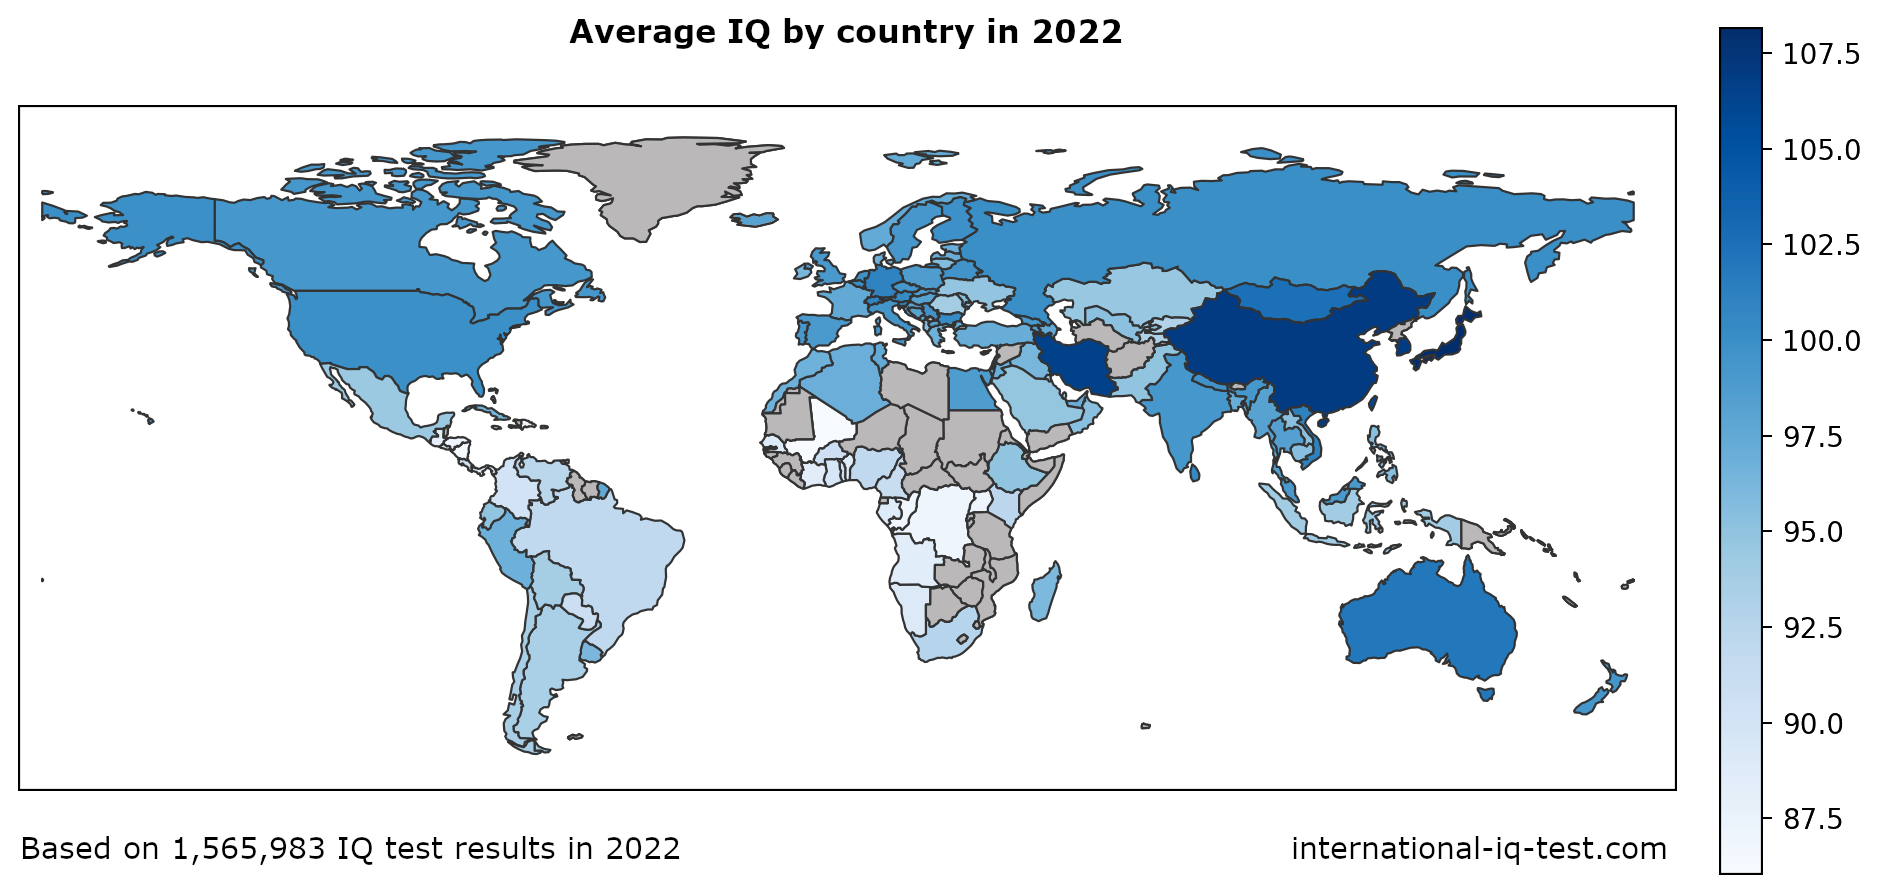 Maailma kaart, mis näitab keskmist IQ-d riikide kaupa 2022. aastal, kasutades siniseid toone kõige heledamast kõige tumedamini.